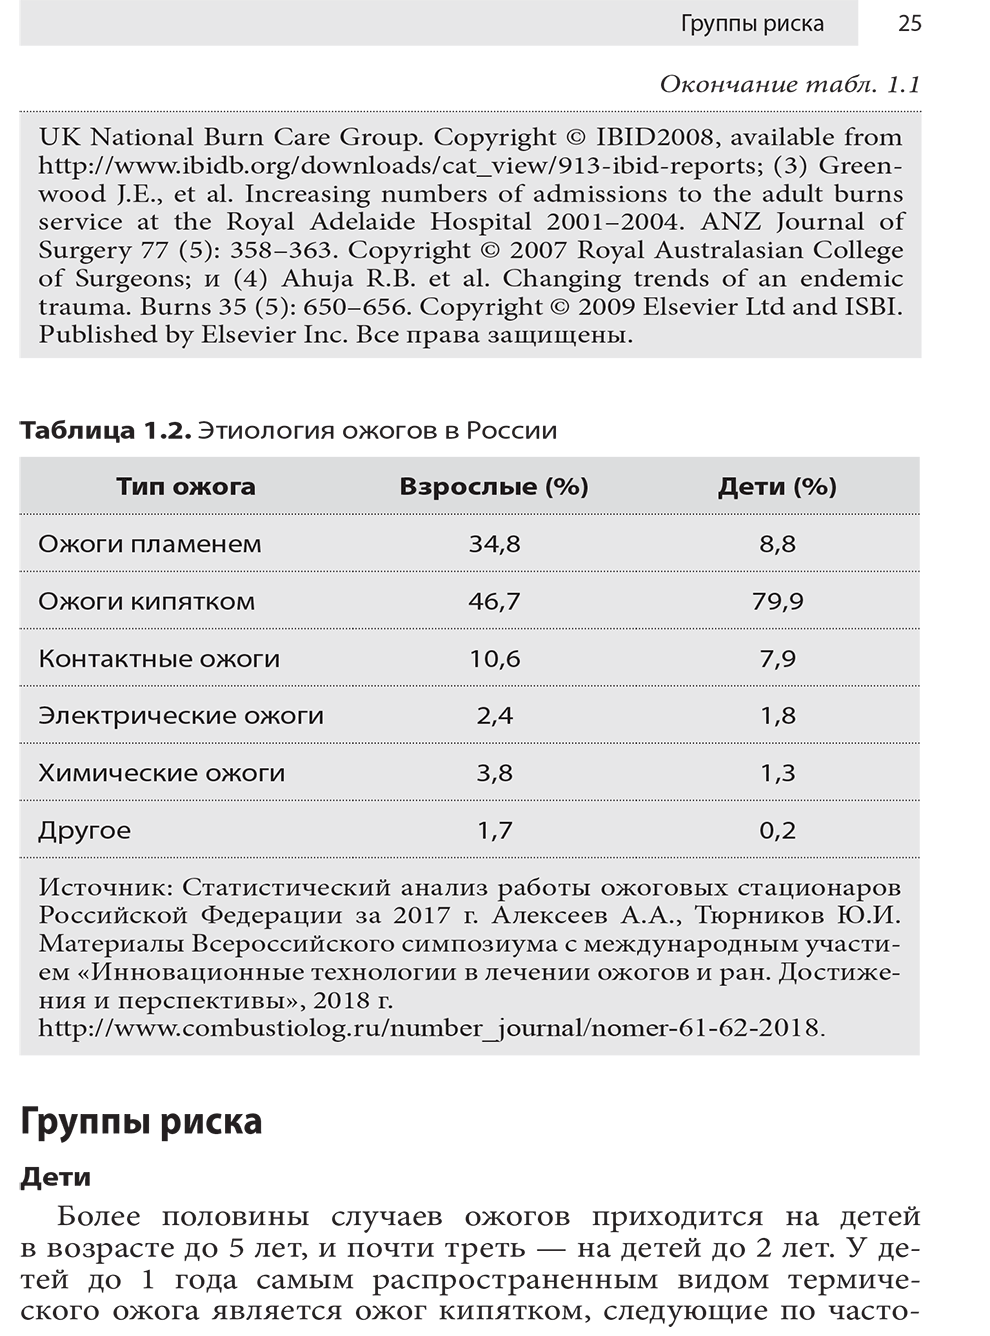 Таблица 1.2. Этиология ожогов в России